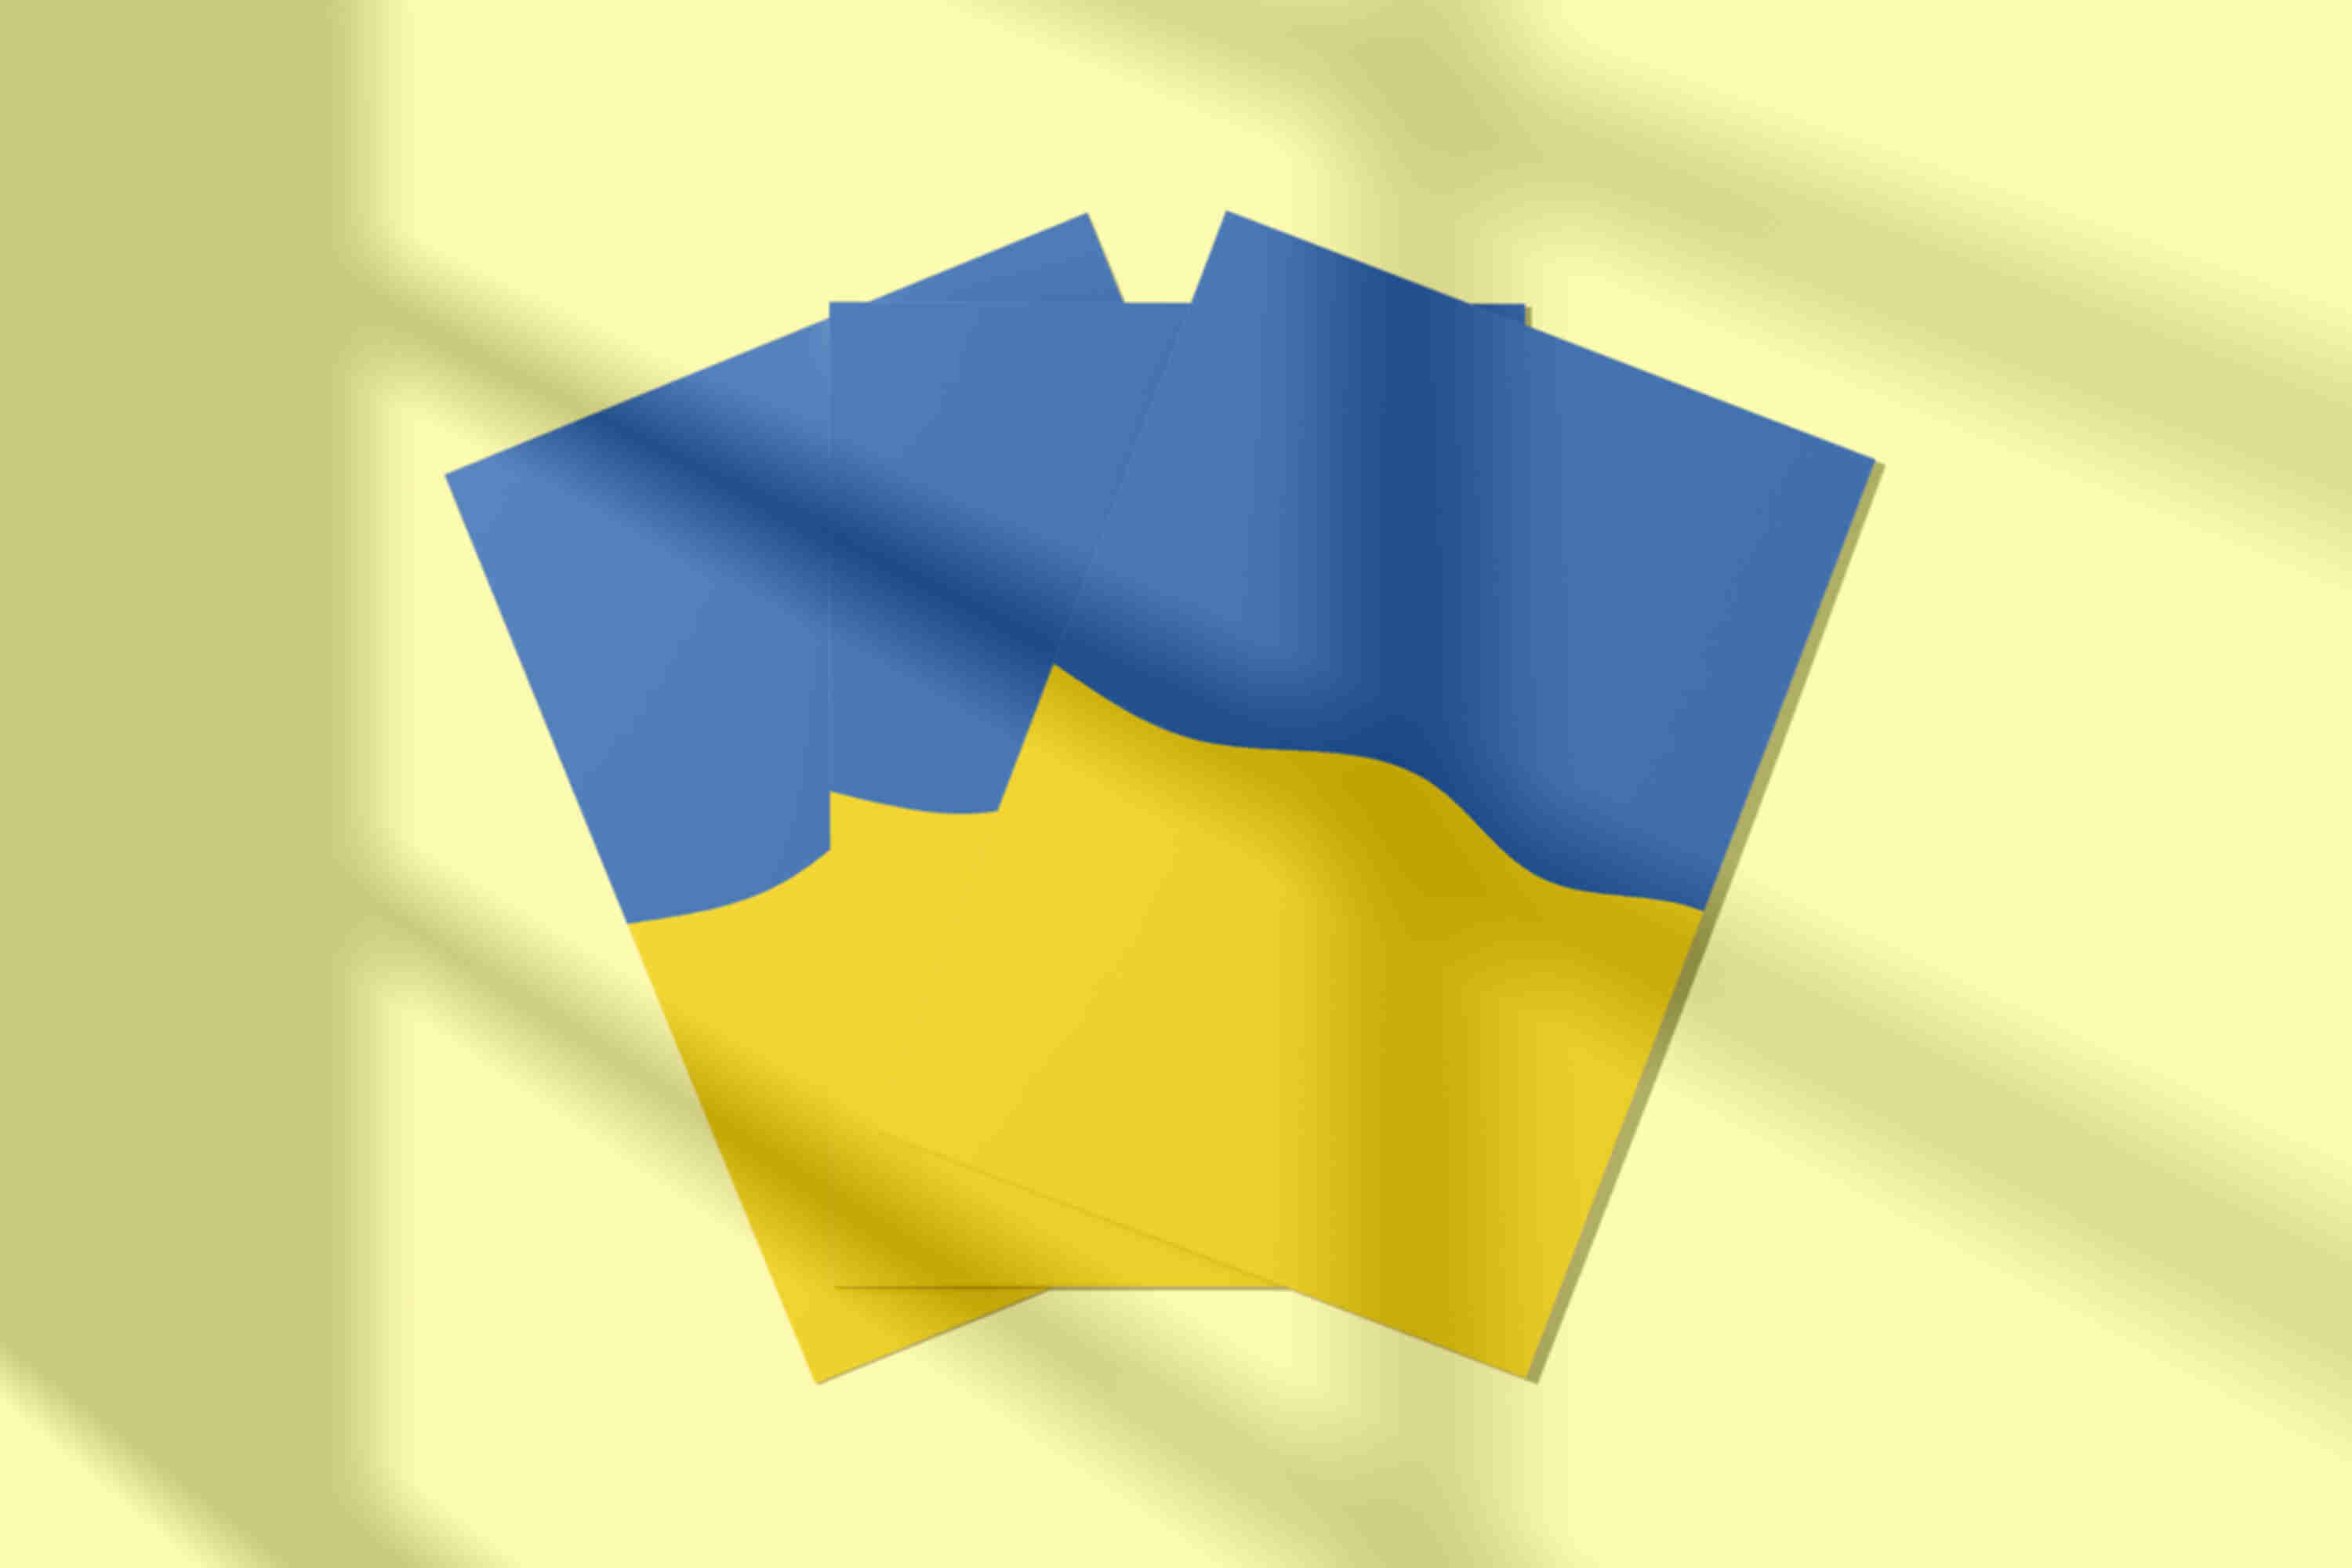 Листівка / постер «Прапор України» • Символи України • Патріотичні сувеніри Ukraine